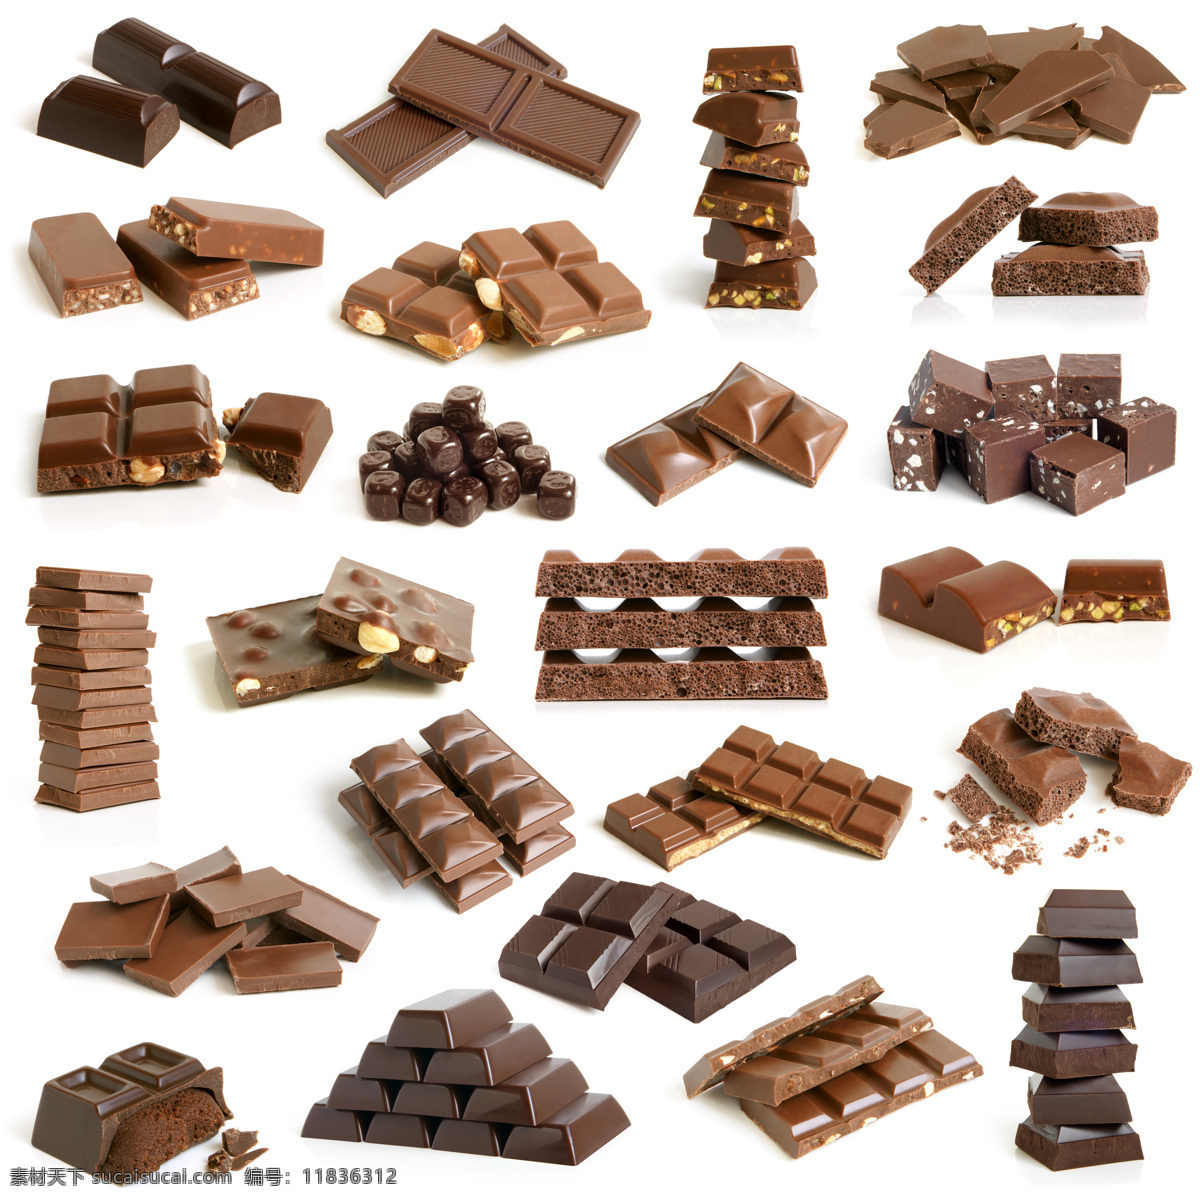 各种巧克力块 巧克力块 巧克力 食物 美食 其他类别 餐饮美食 白色